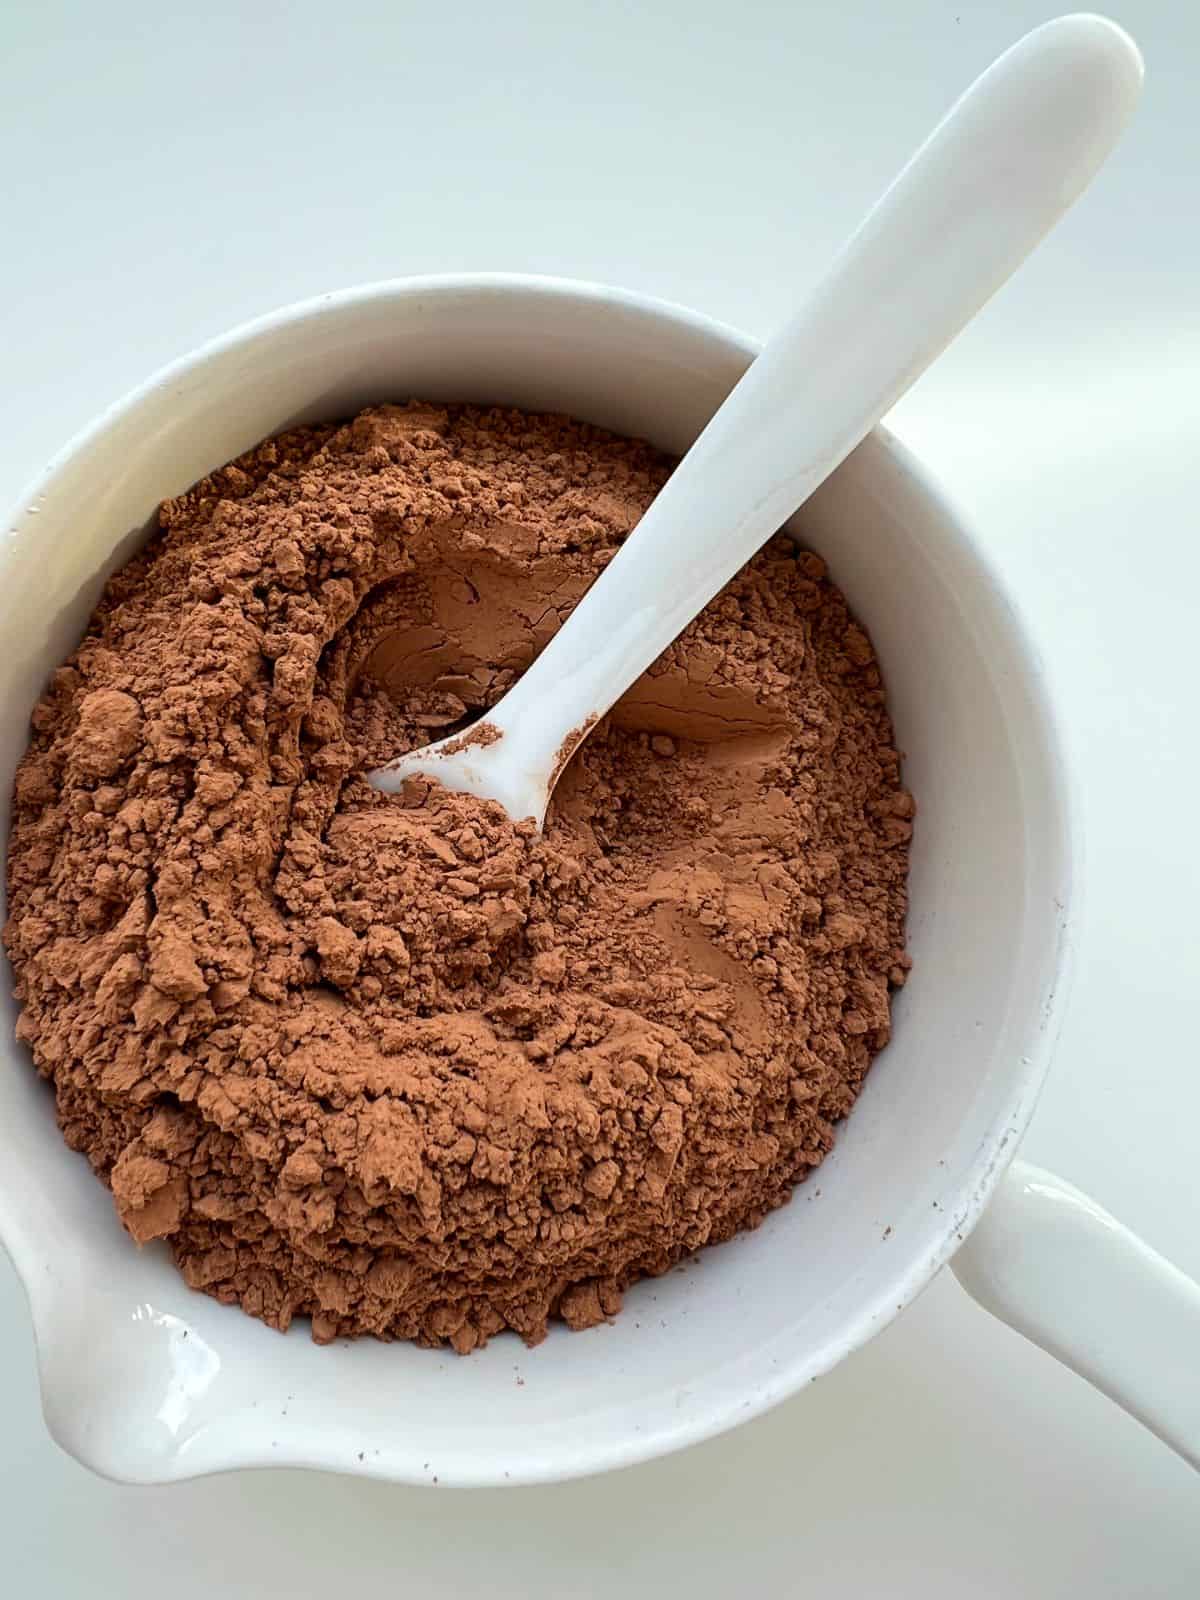 A white ceramic bowl contains cacao powder.